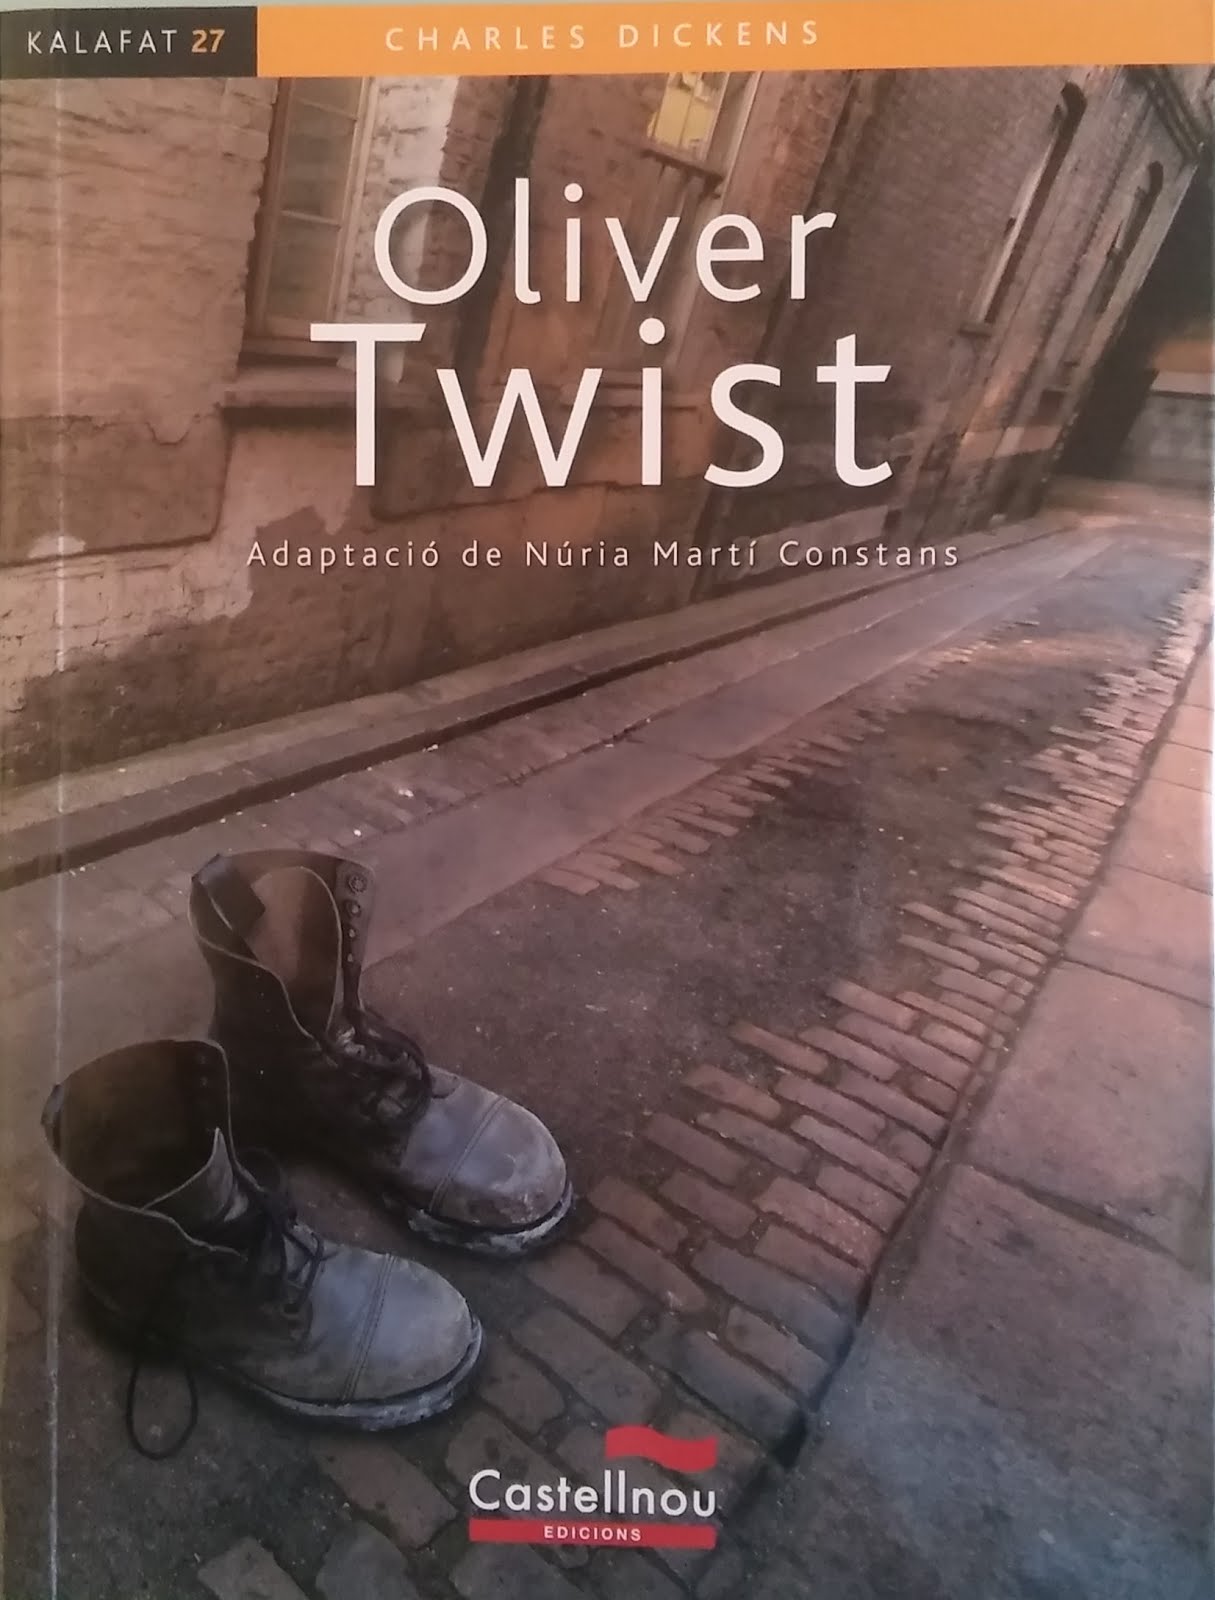 2016 Oliver Twist, de Charles Dickens (Adaptació)